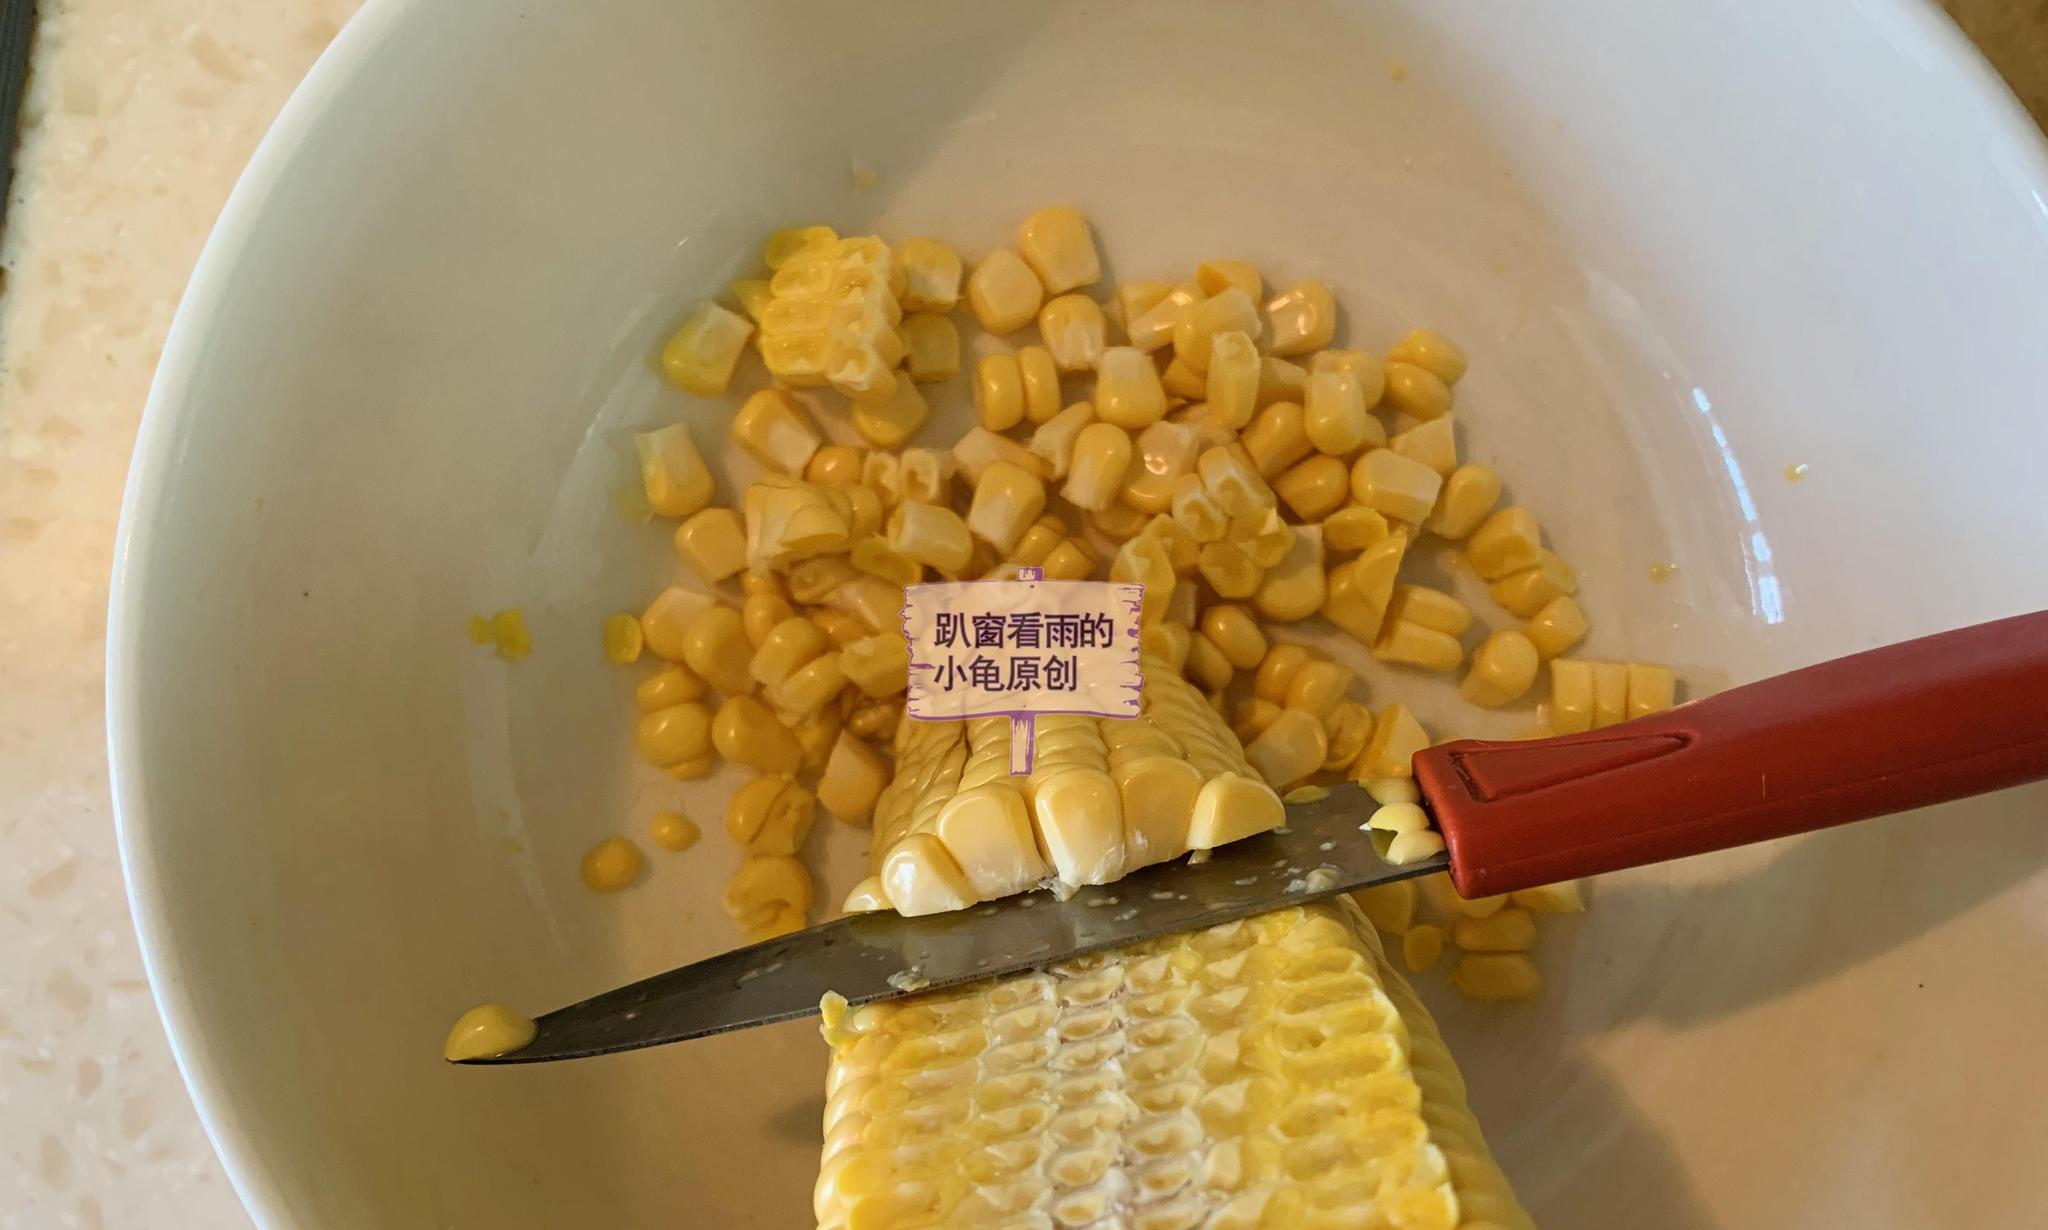 奶香玉米的做法_奶香玉米怎么做_奶香玉米的家常做法_隐耳丰的博客【心食谱】